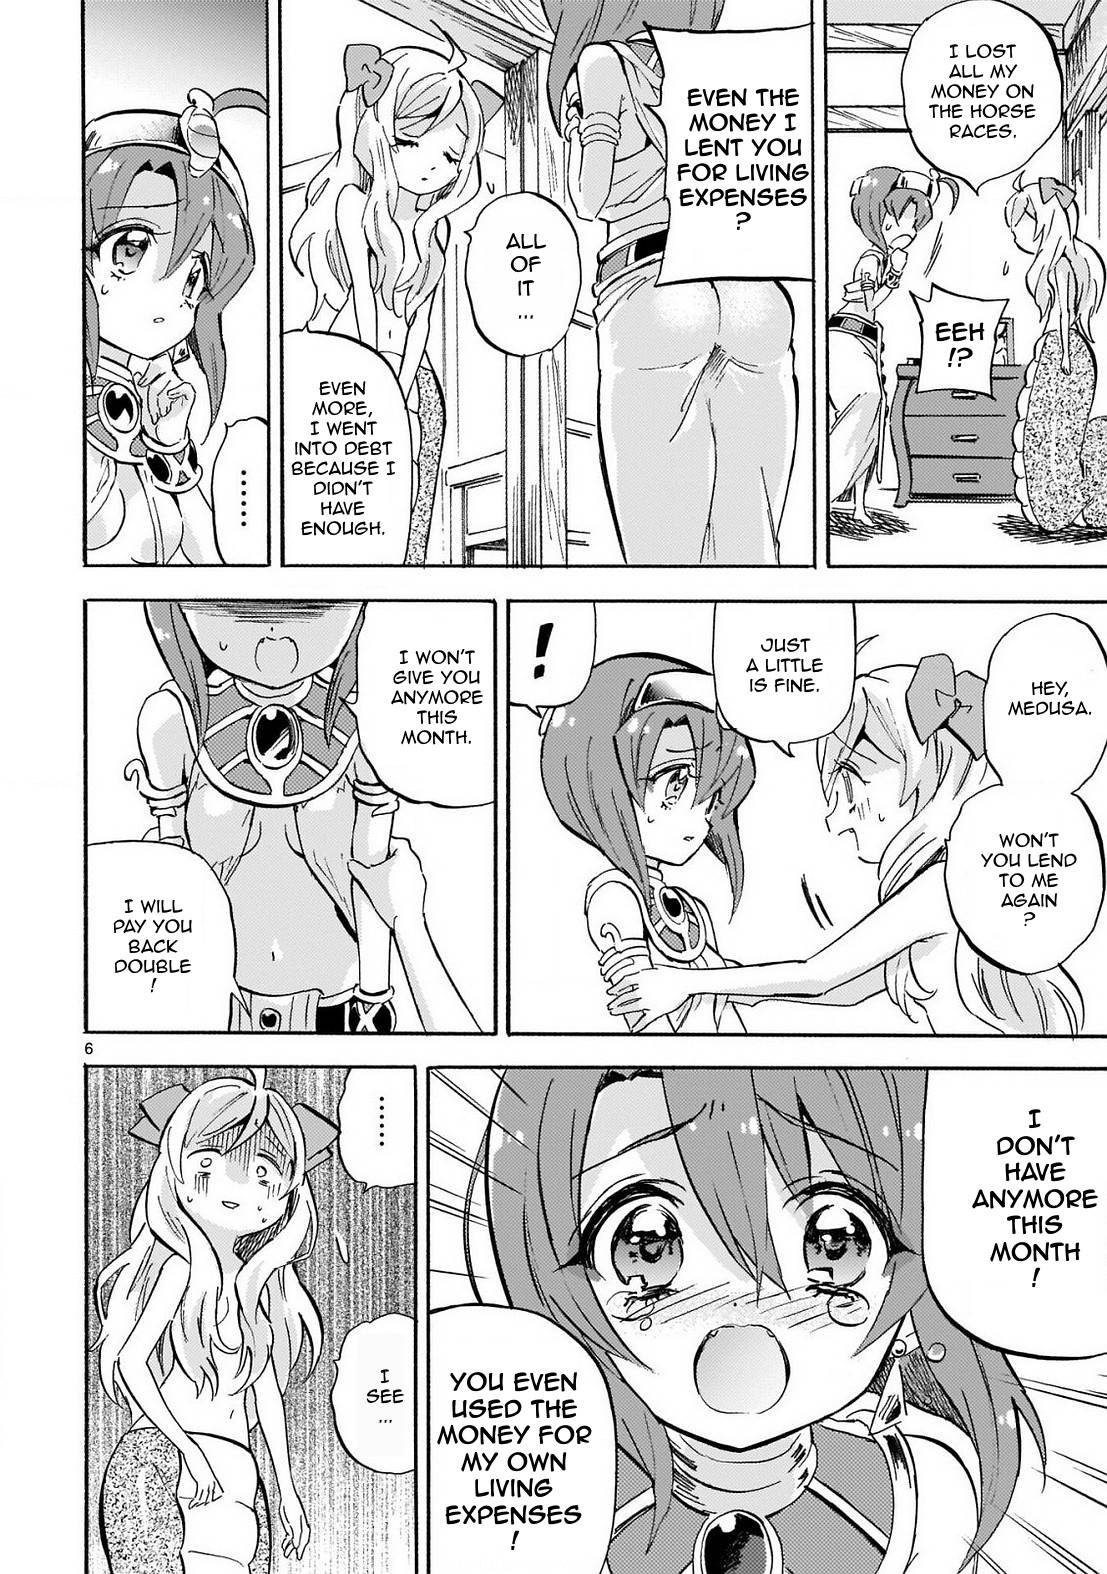 Jashin-chan Dropkick chapter 229 page 6